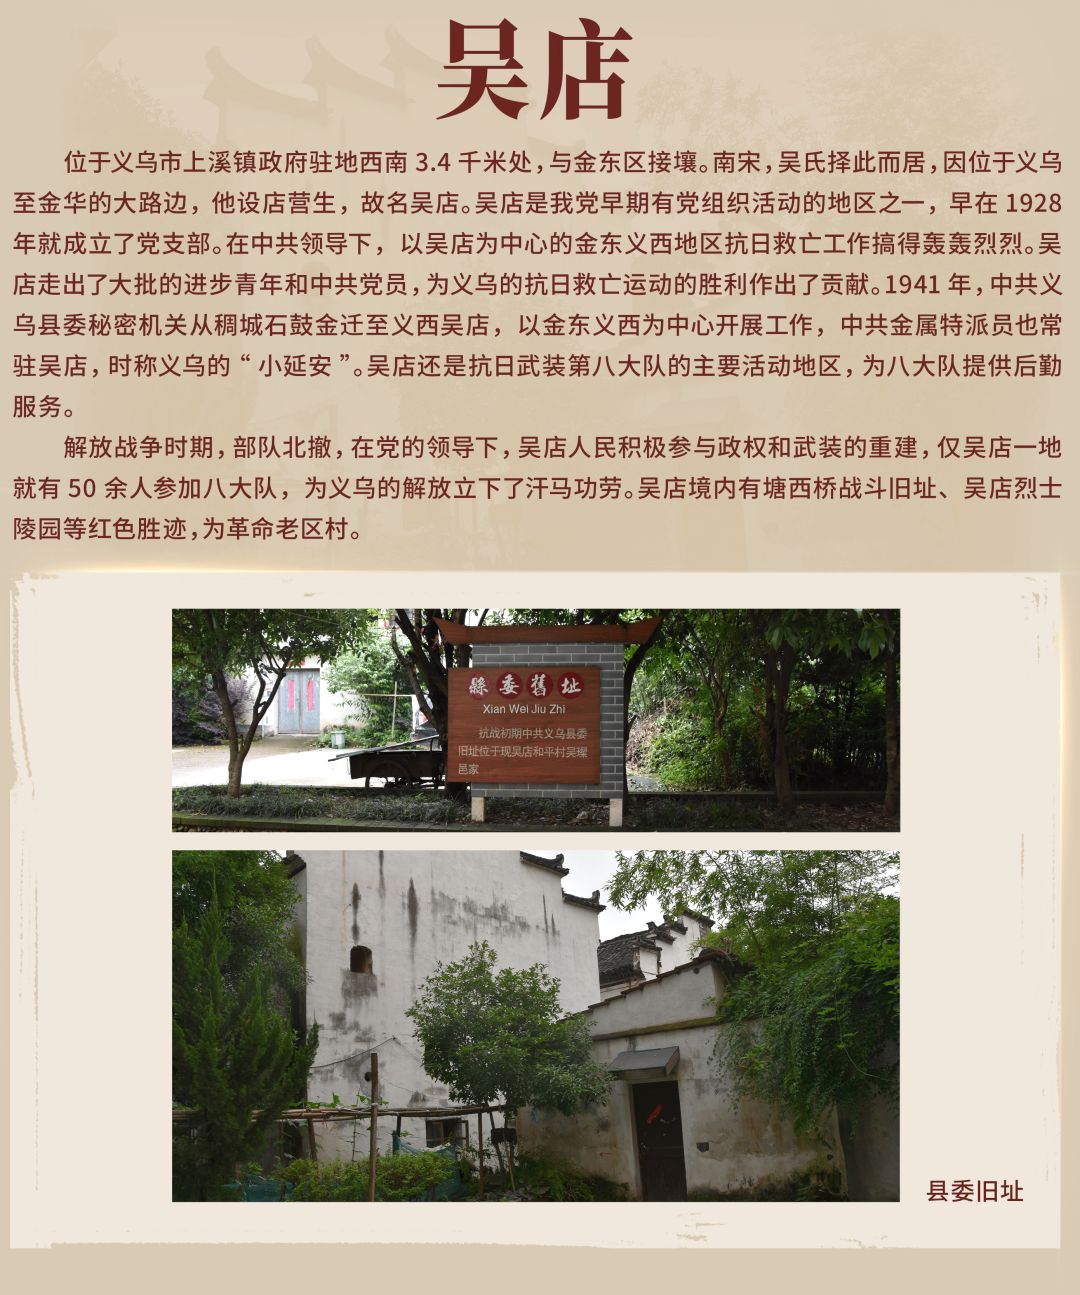 义乌首批20地被授予“红色地名”牌匾